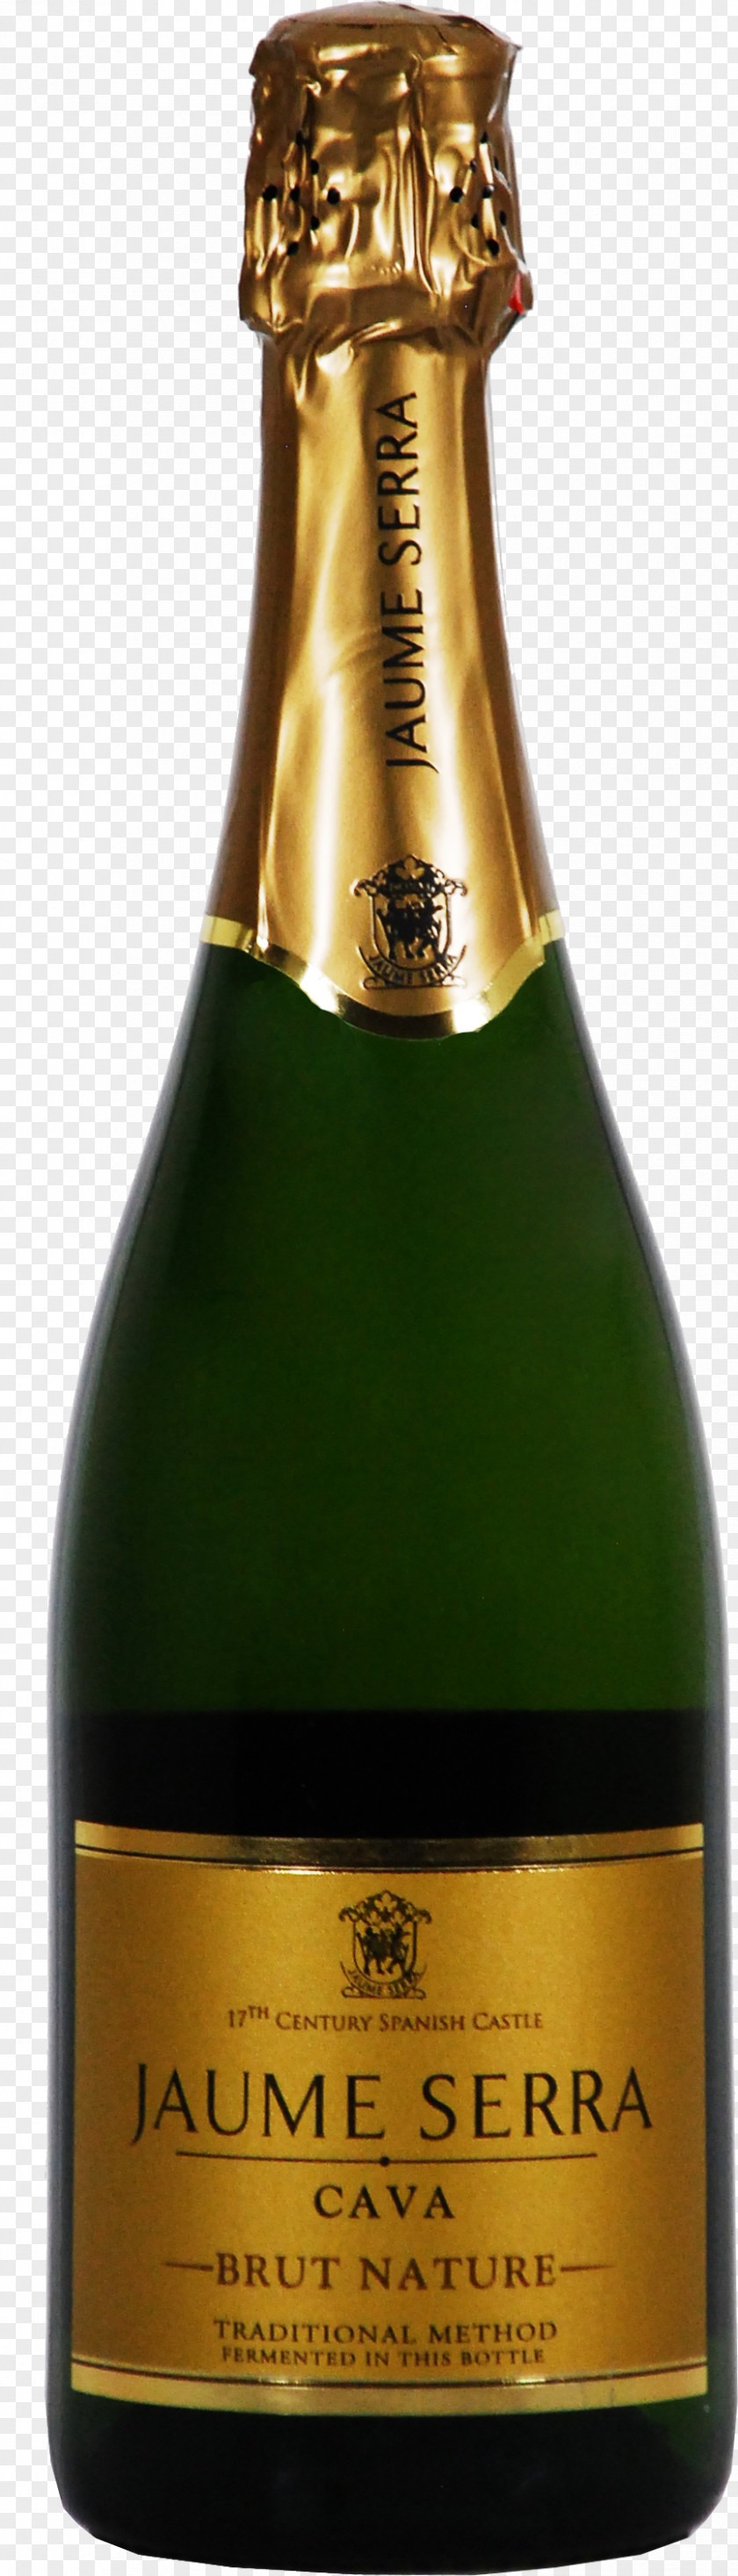 Champagne Prosecco Sparkling Wine Valdobbiadene Cava DO PNG